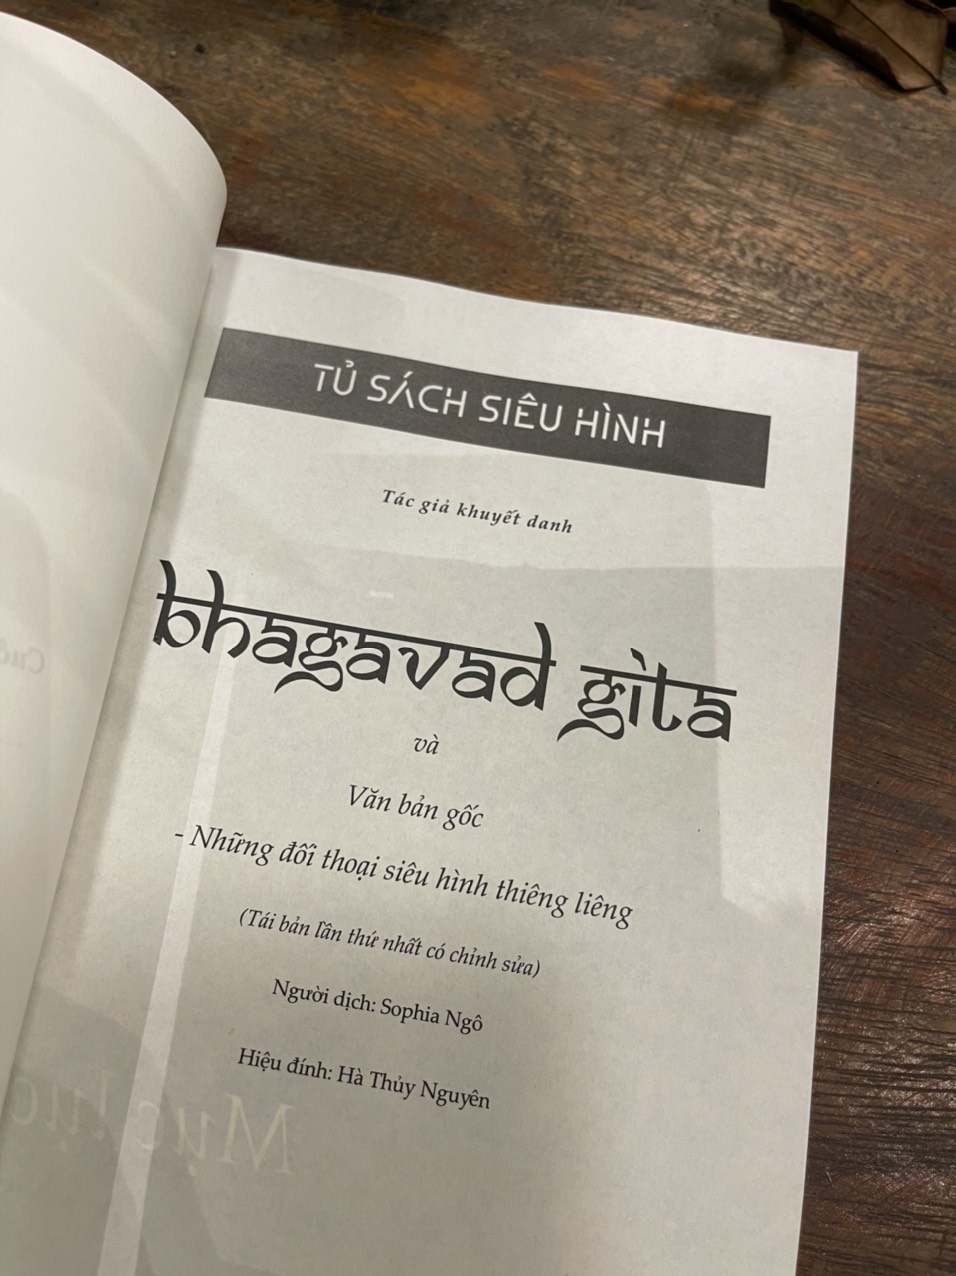 (Tái bản 2023 – bìa mềm) BHAGAVAD GITA – Khuyết danh - Dịch giả: Sophia Ngo dịch; Hà Thủy Nguyên hiệu đính - Lyceum - NXB Đà Nẵng